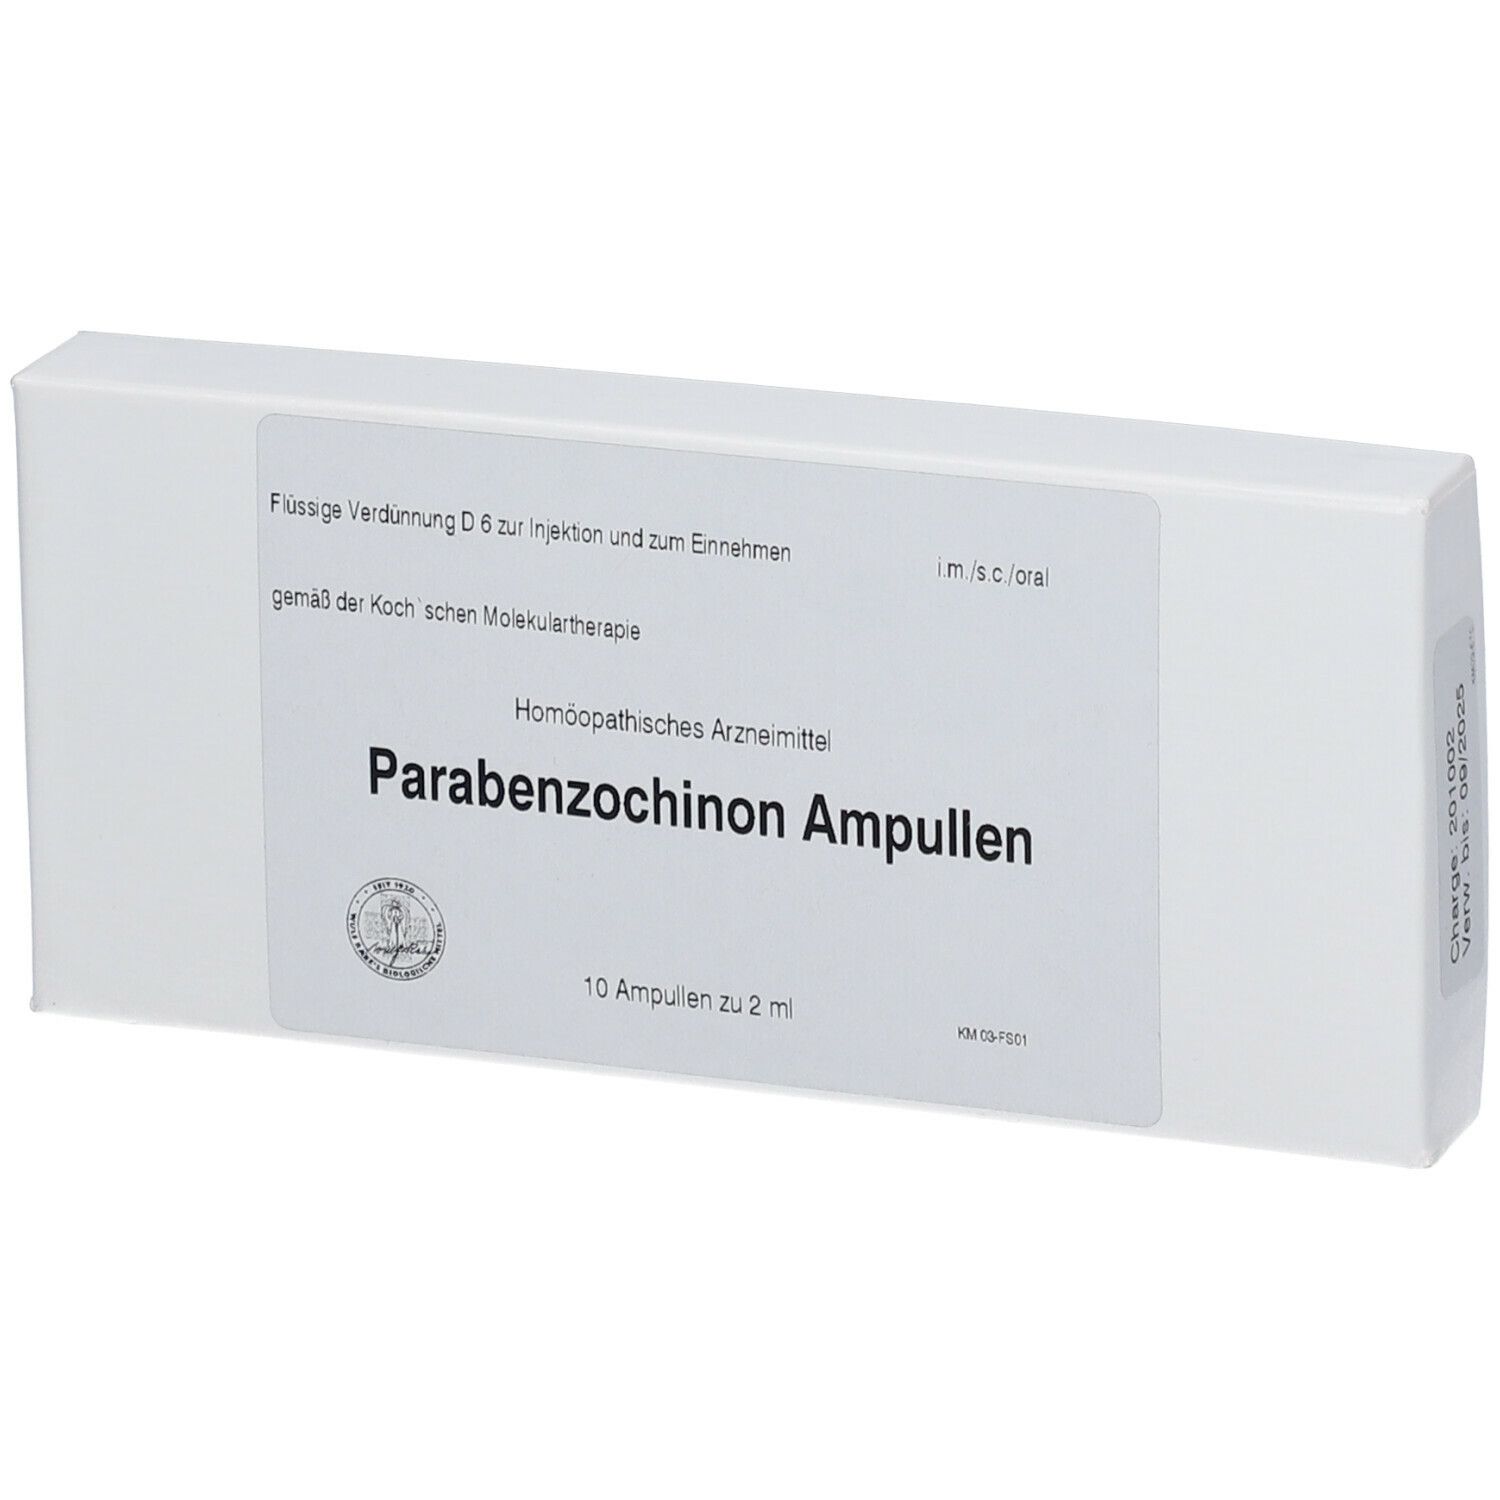 Parabenzochinon